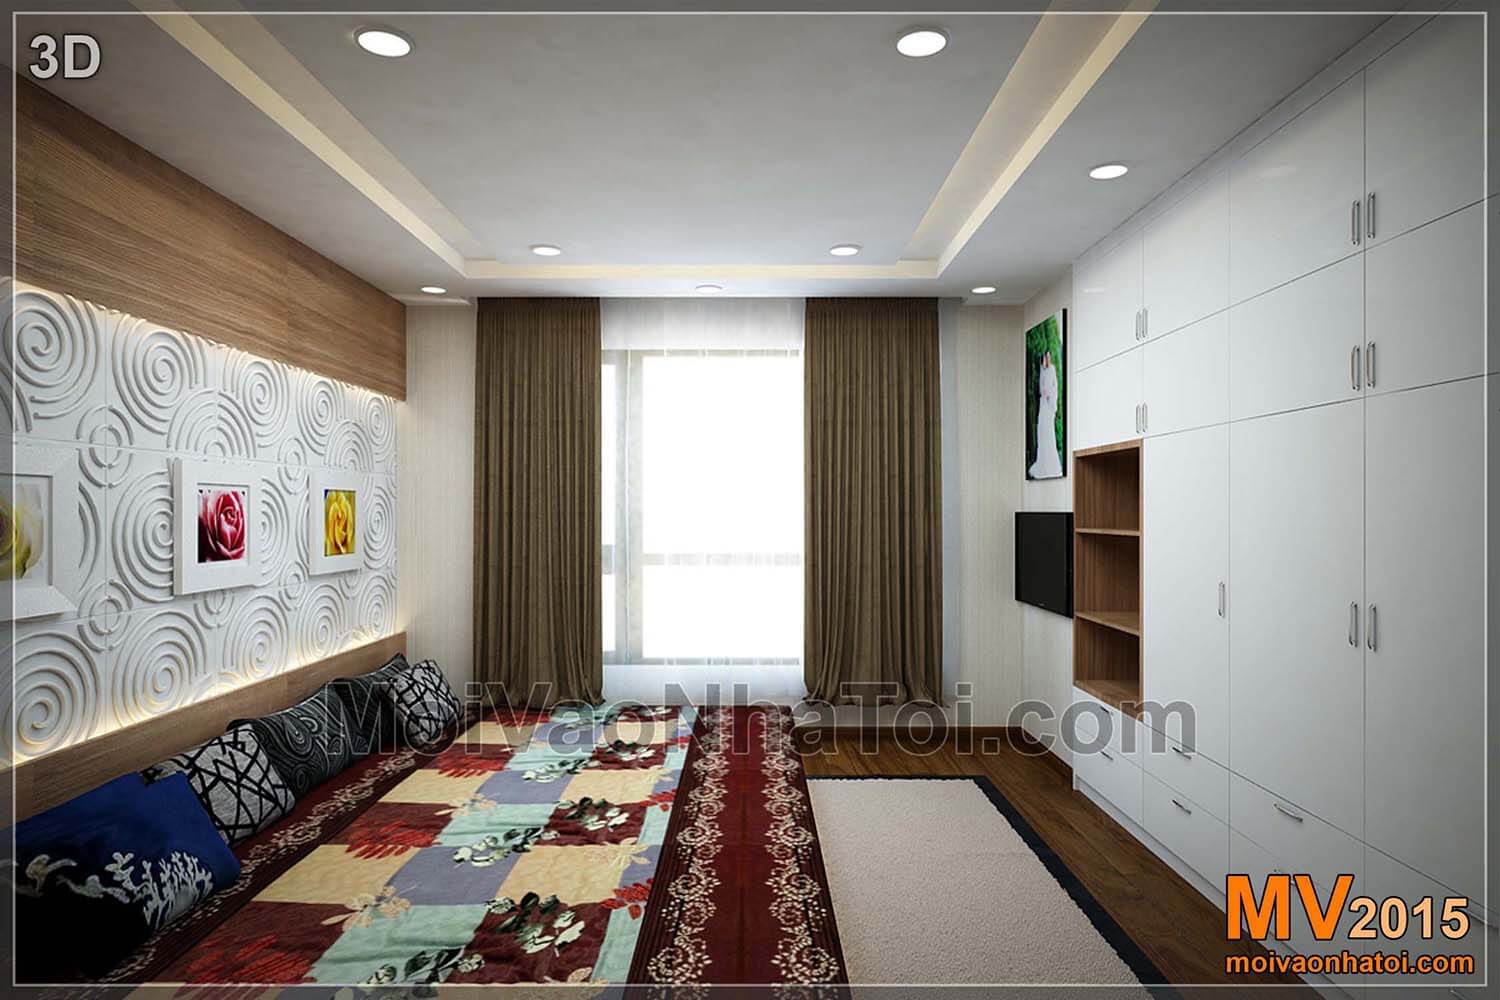 3Dデザインの大きな寝室のアパートT8タイムズシティ